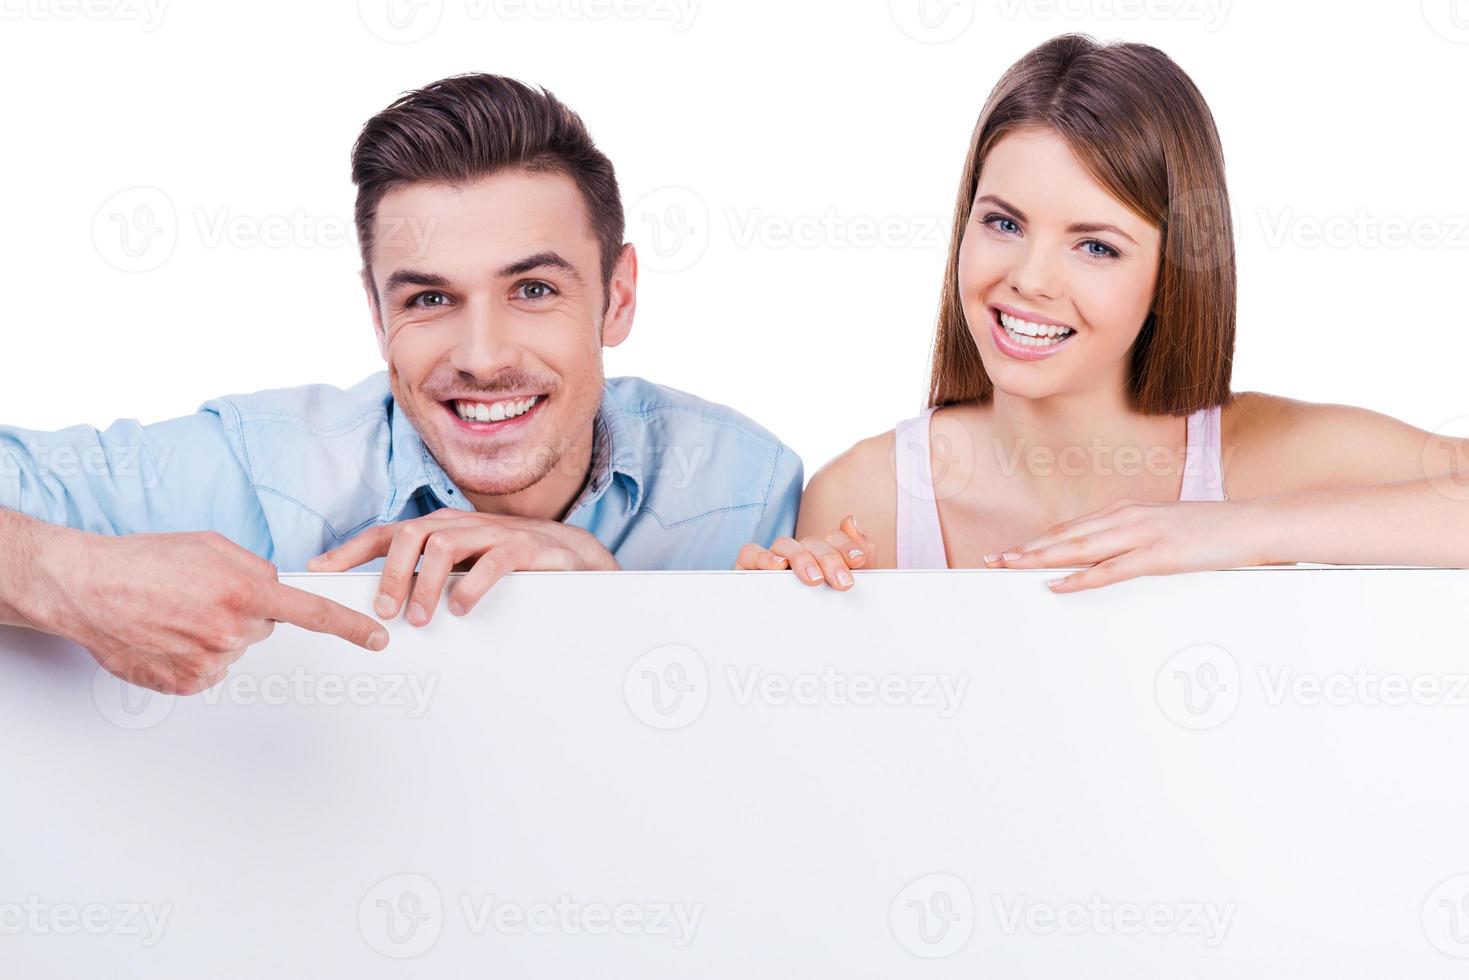 solo mire a esa hermosa joven pareja amorosa sonriendo y apoyándose en el espacio de la copia mientras el hombre lo señala con el dedo foto